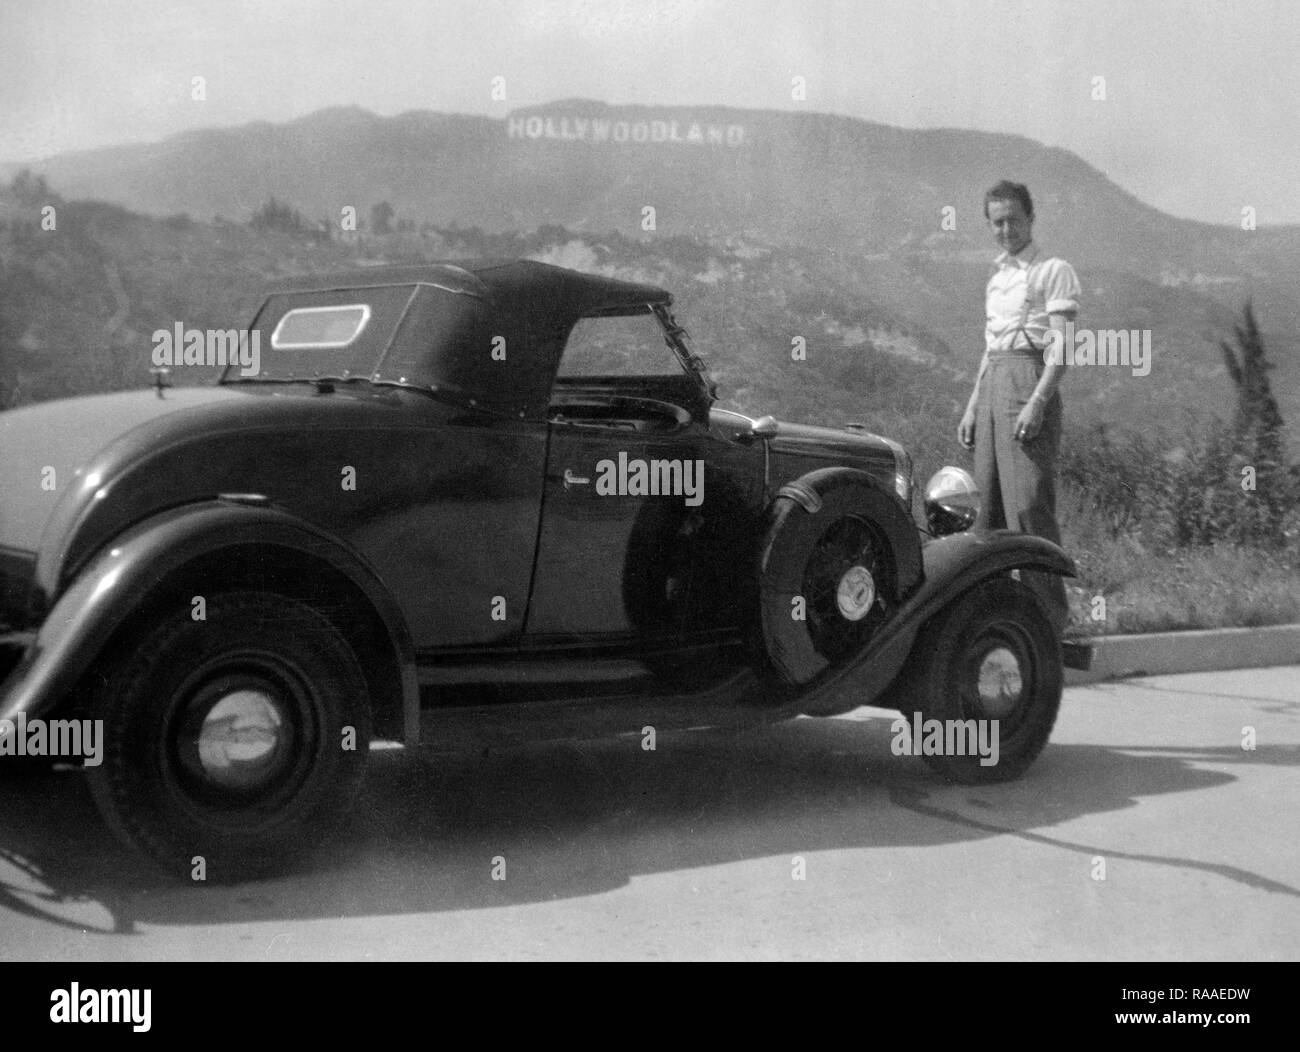 Un giovane uomo pone con la sua vettura con l'originale Hollywoodland segno, ca. 1930. Foto Stock